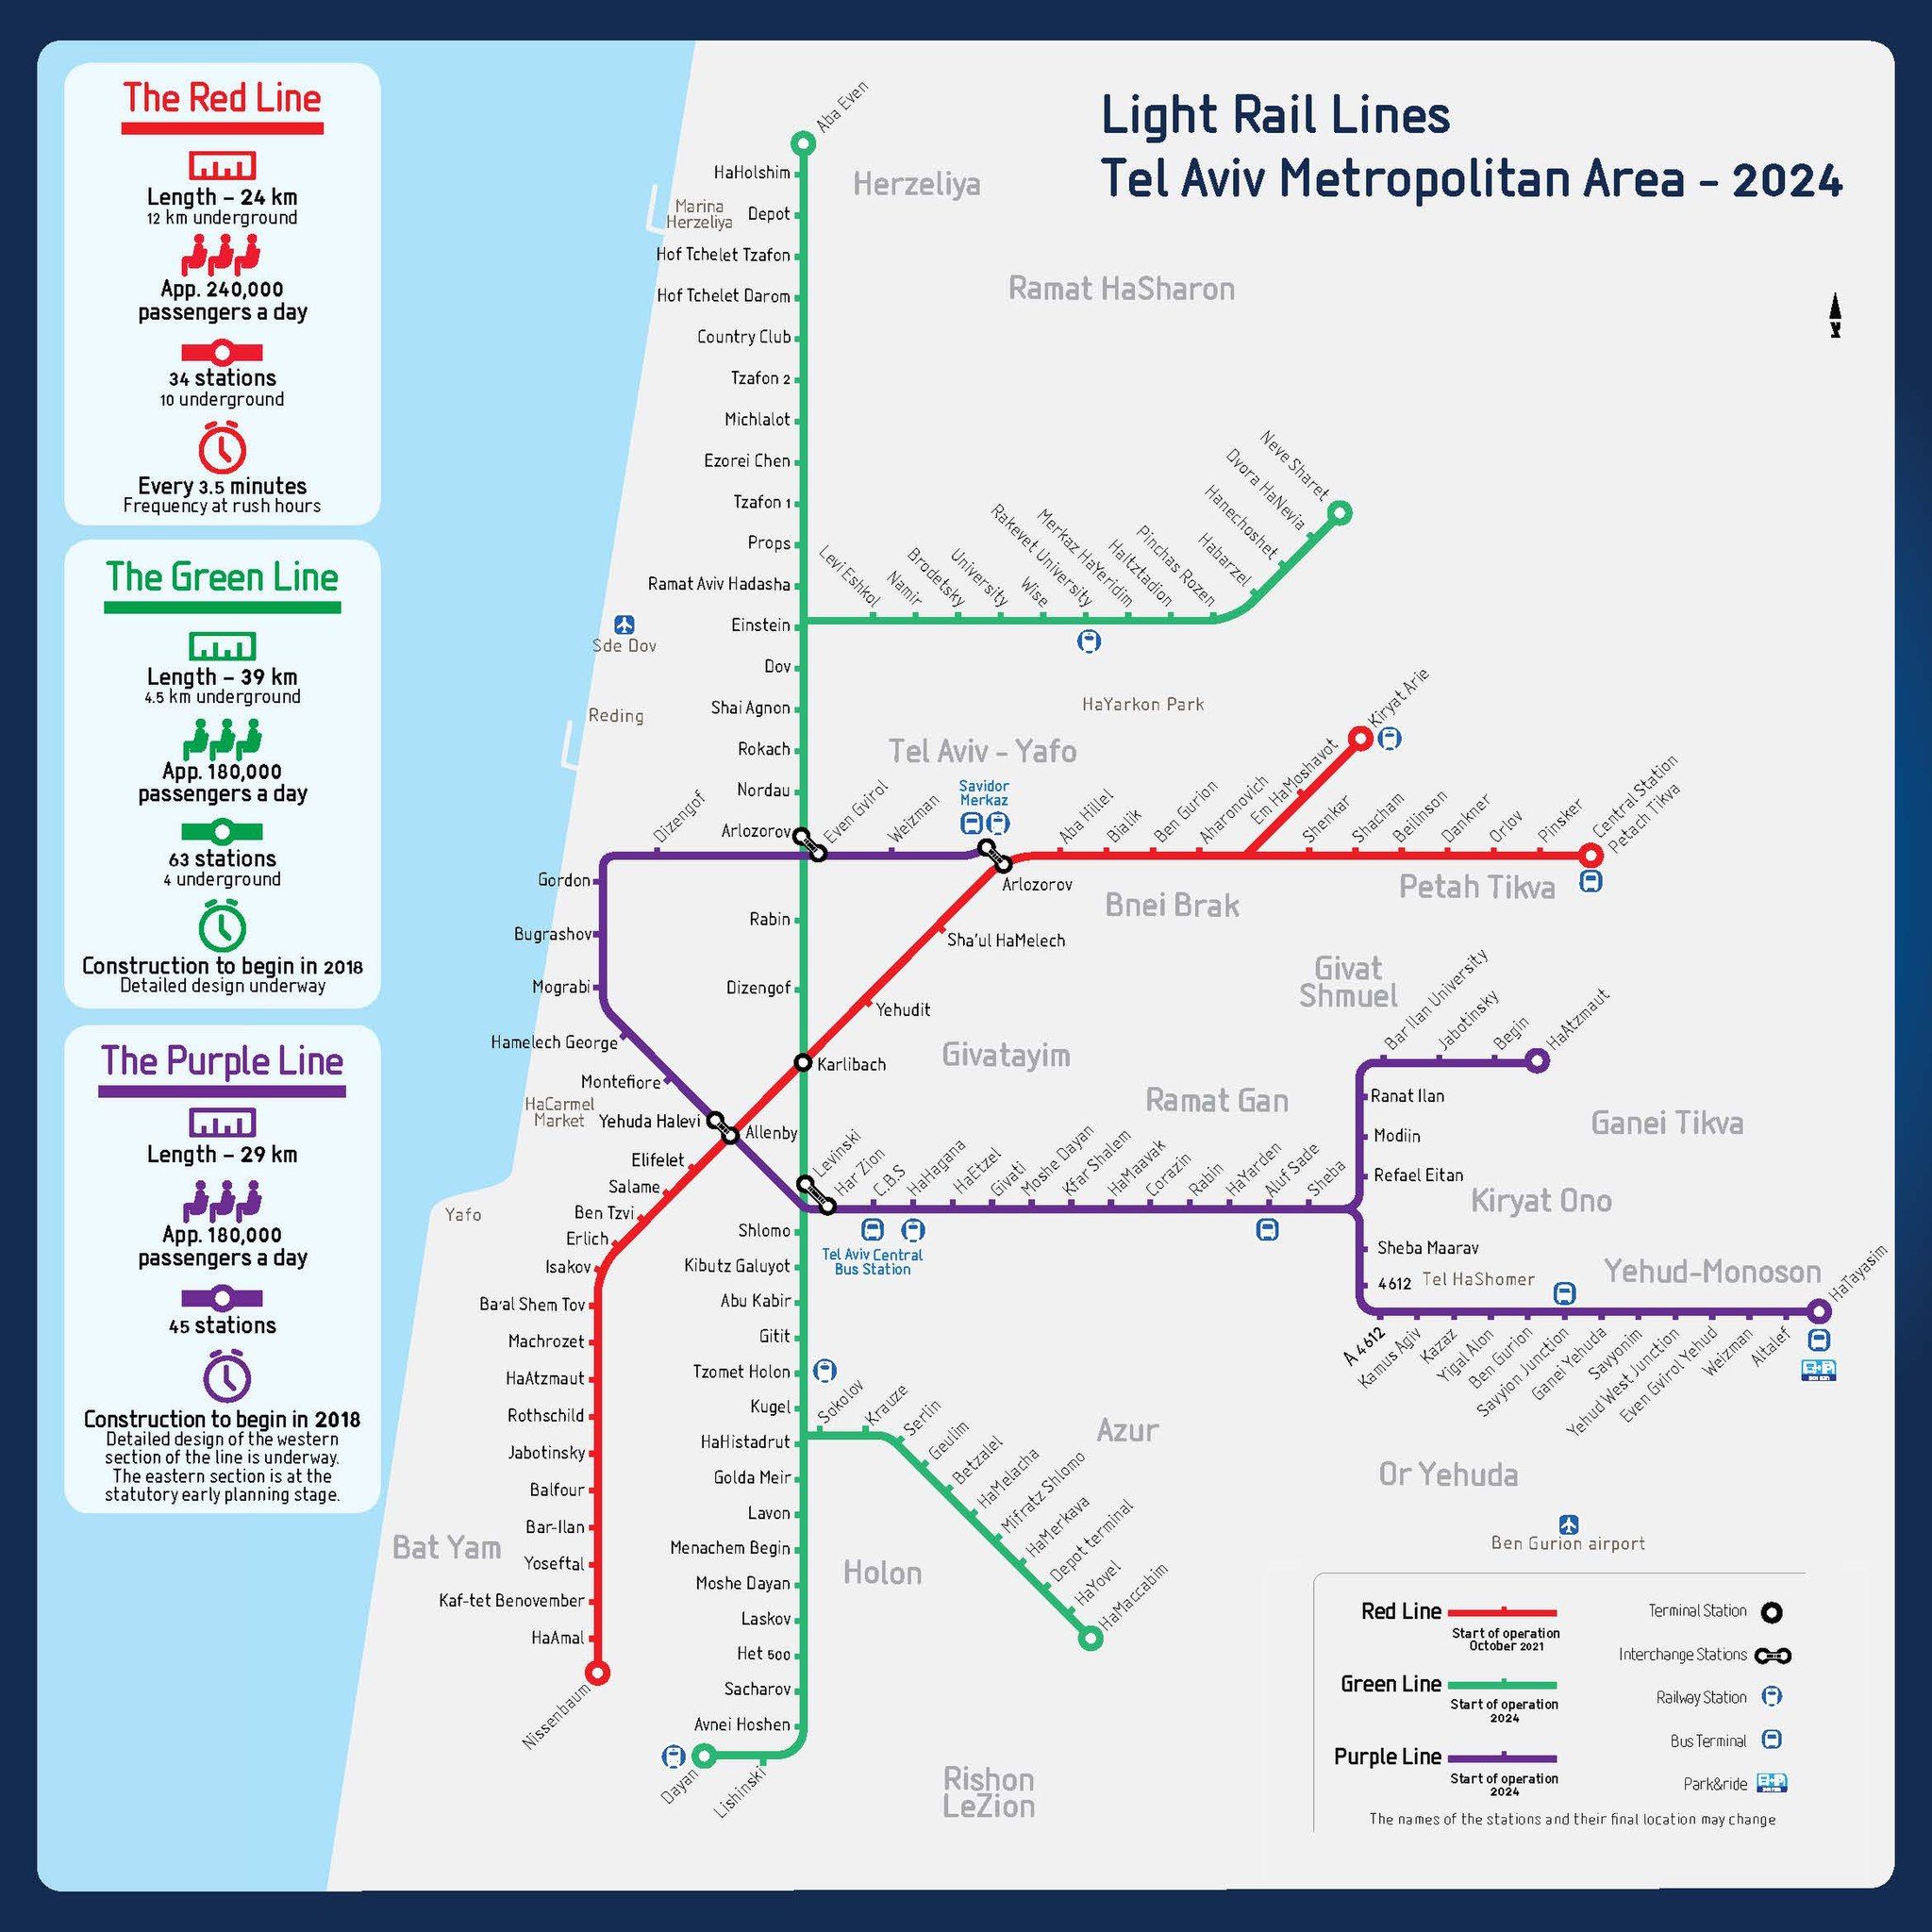 Tel Aviv Metro - Network of LRT system